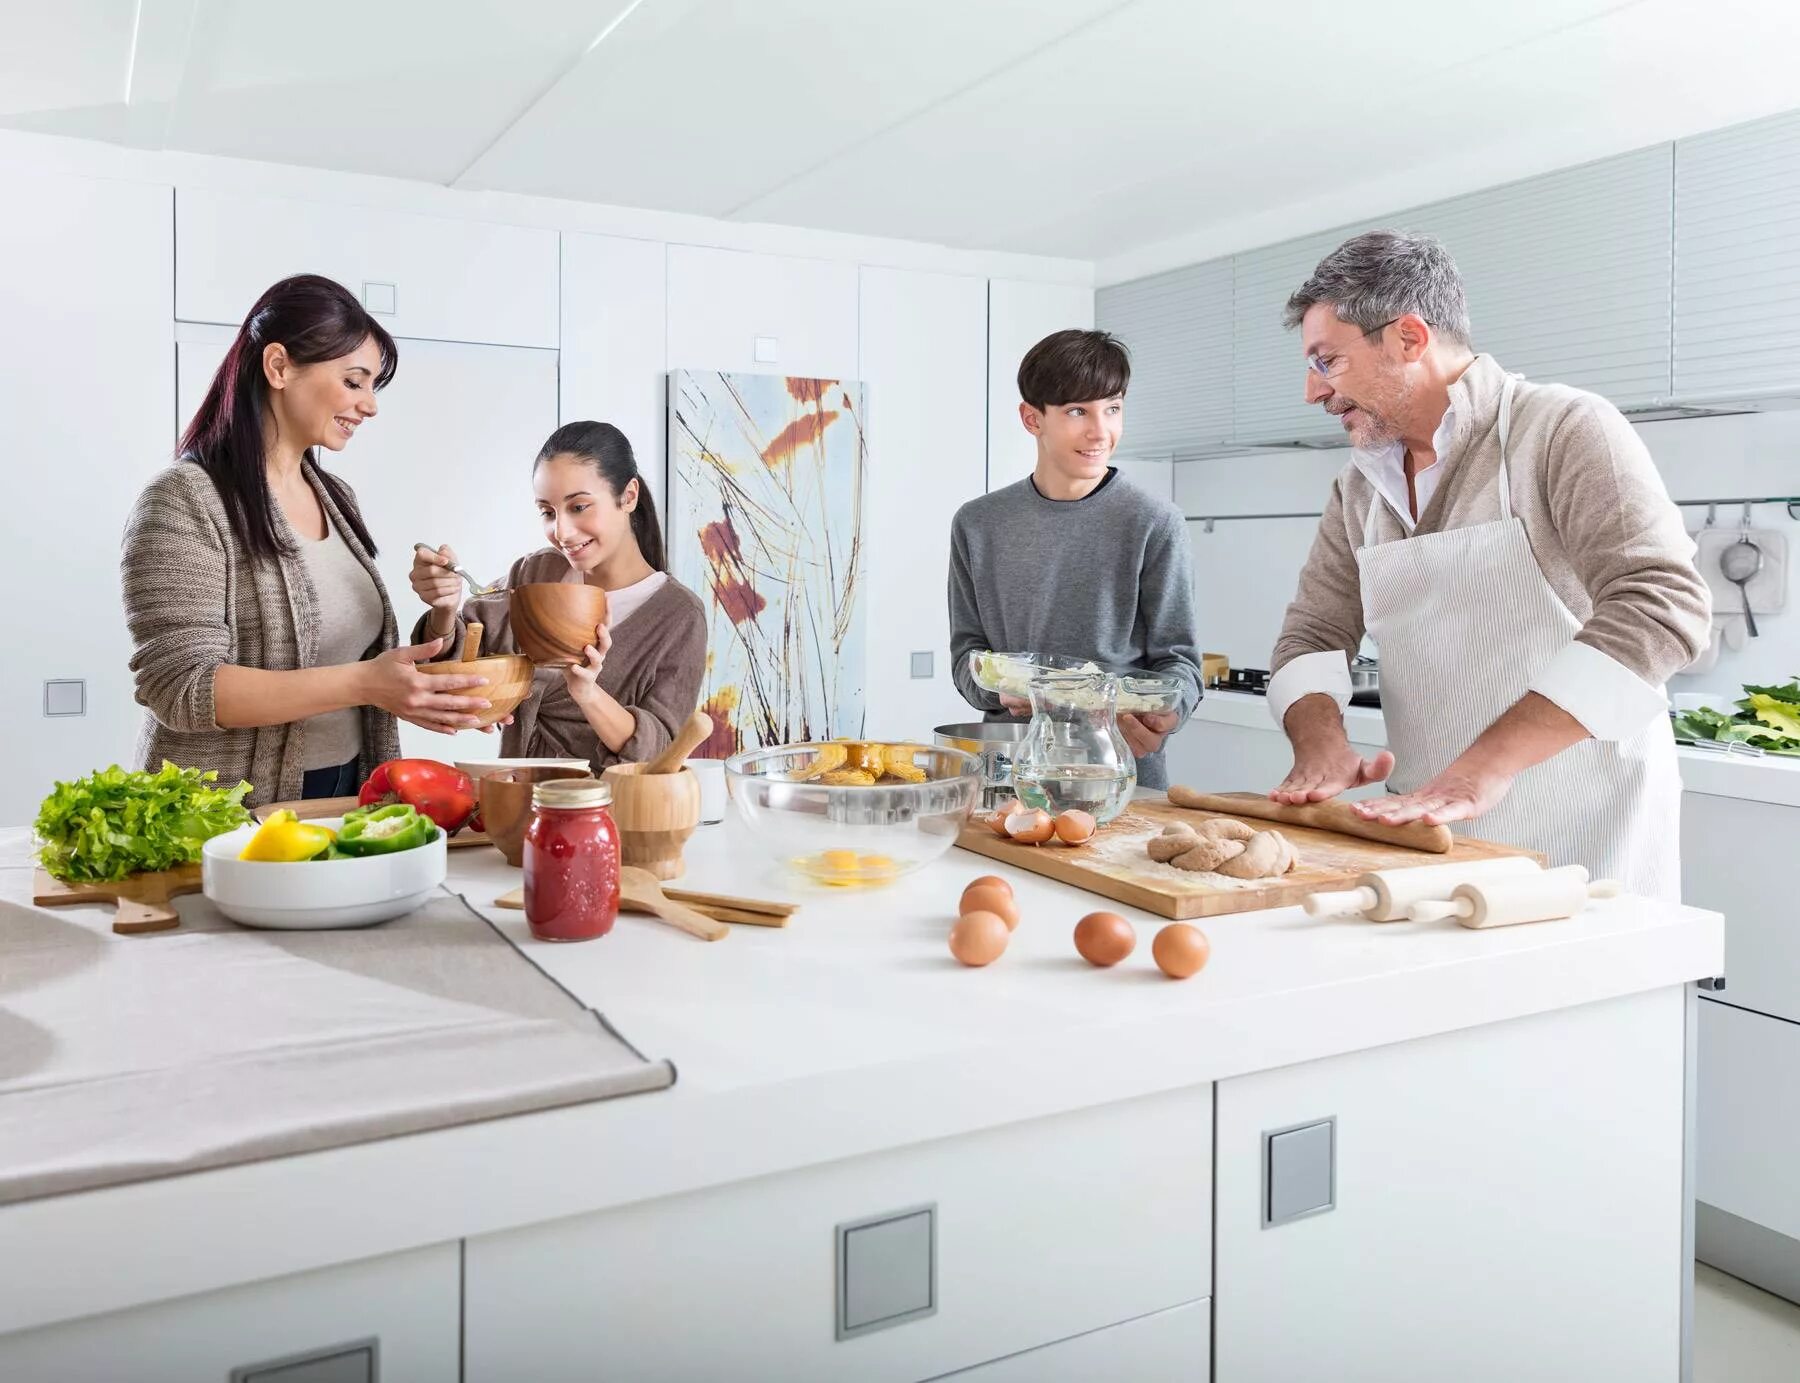 Prepare s. Кухня для большой семьи. Современный быт. Семья на кухне. Люди на кухне.